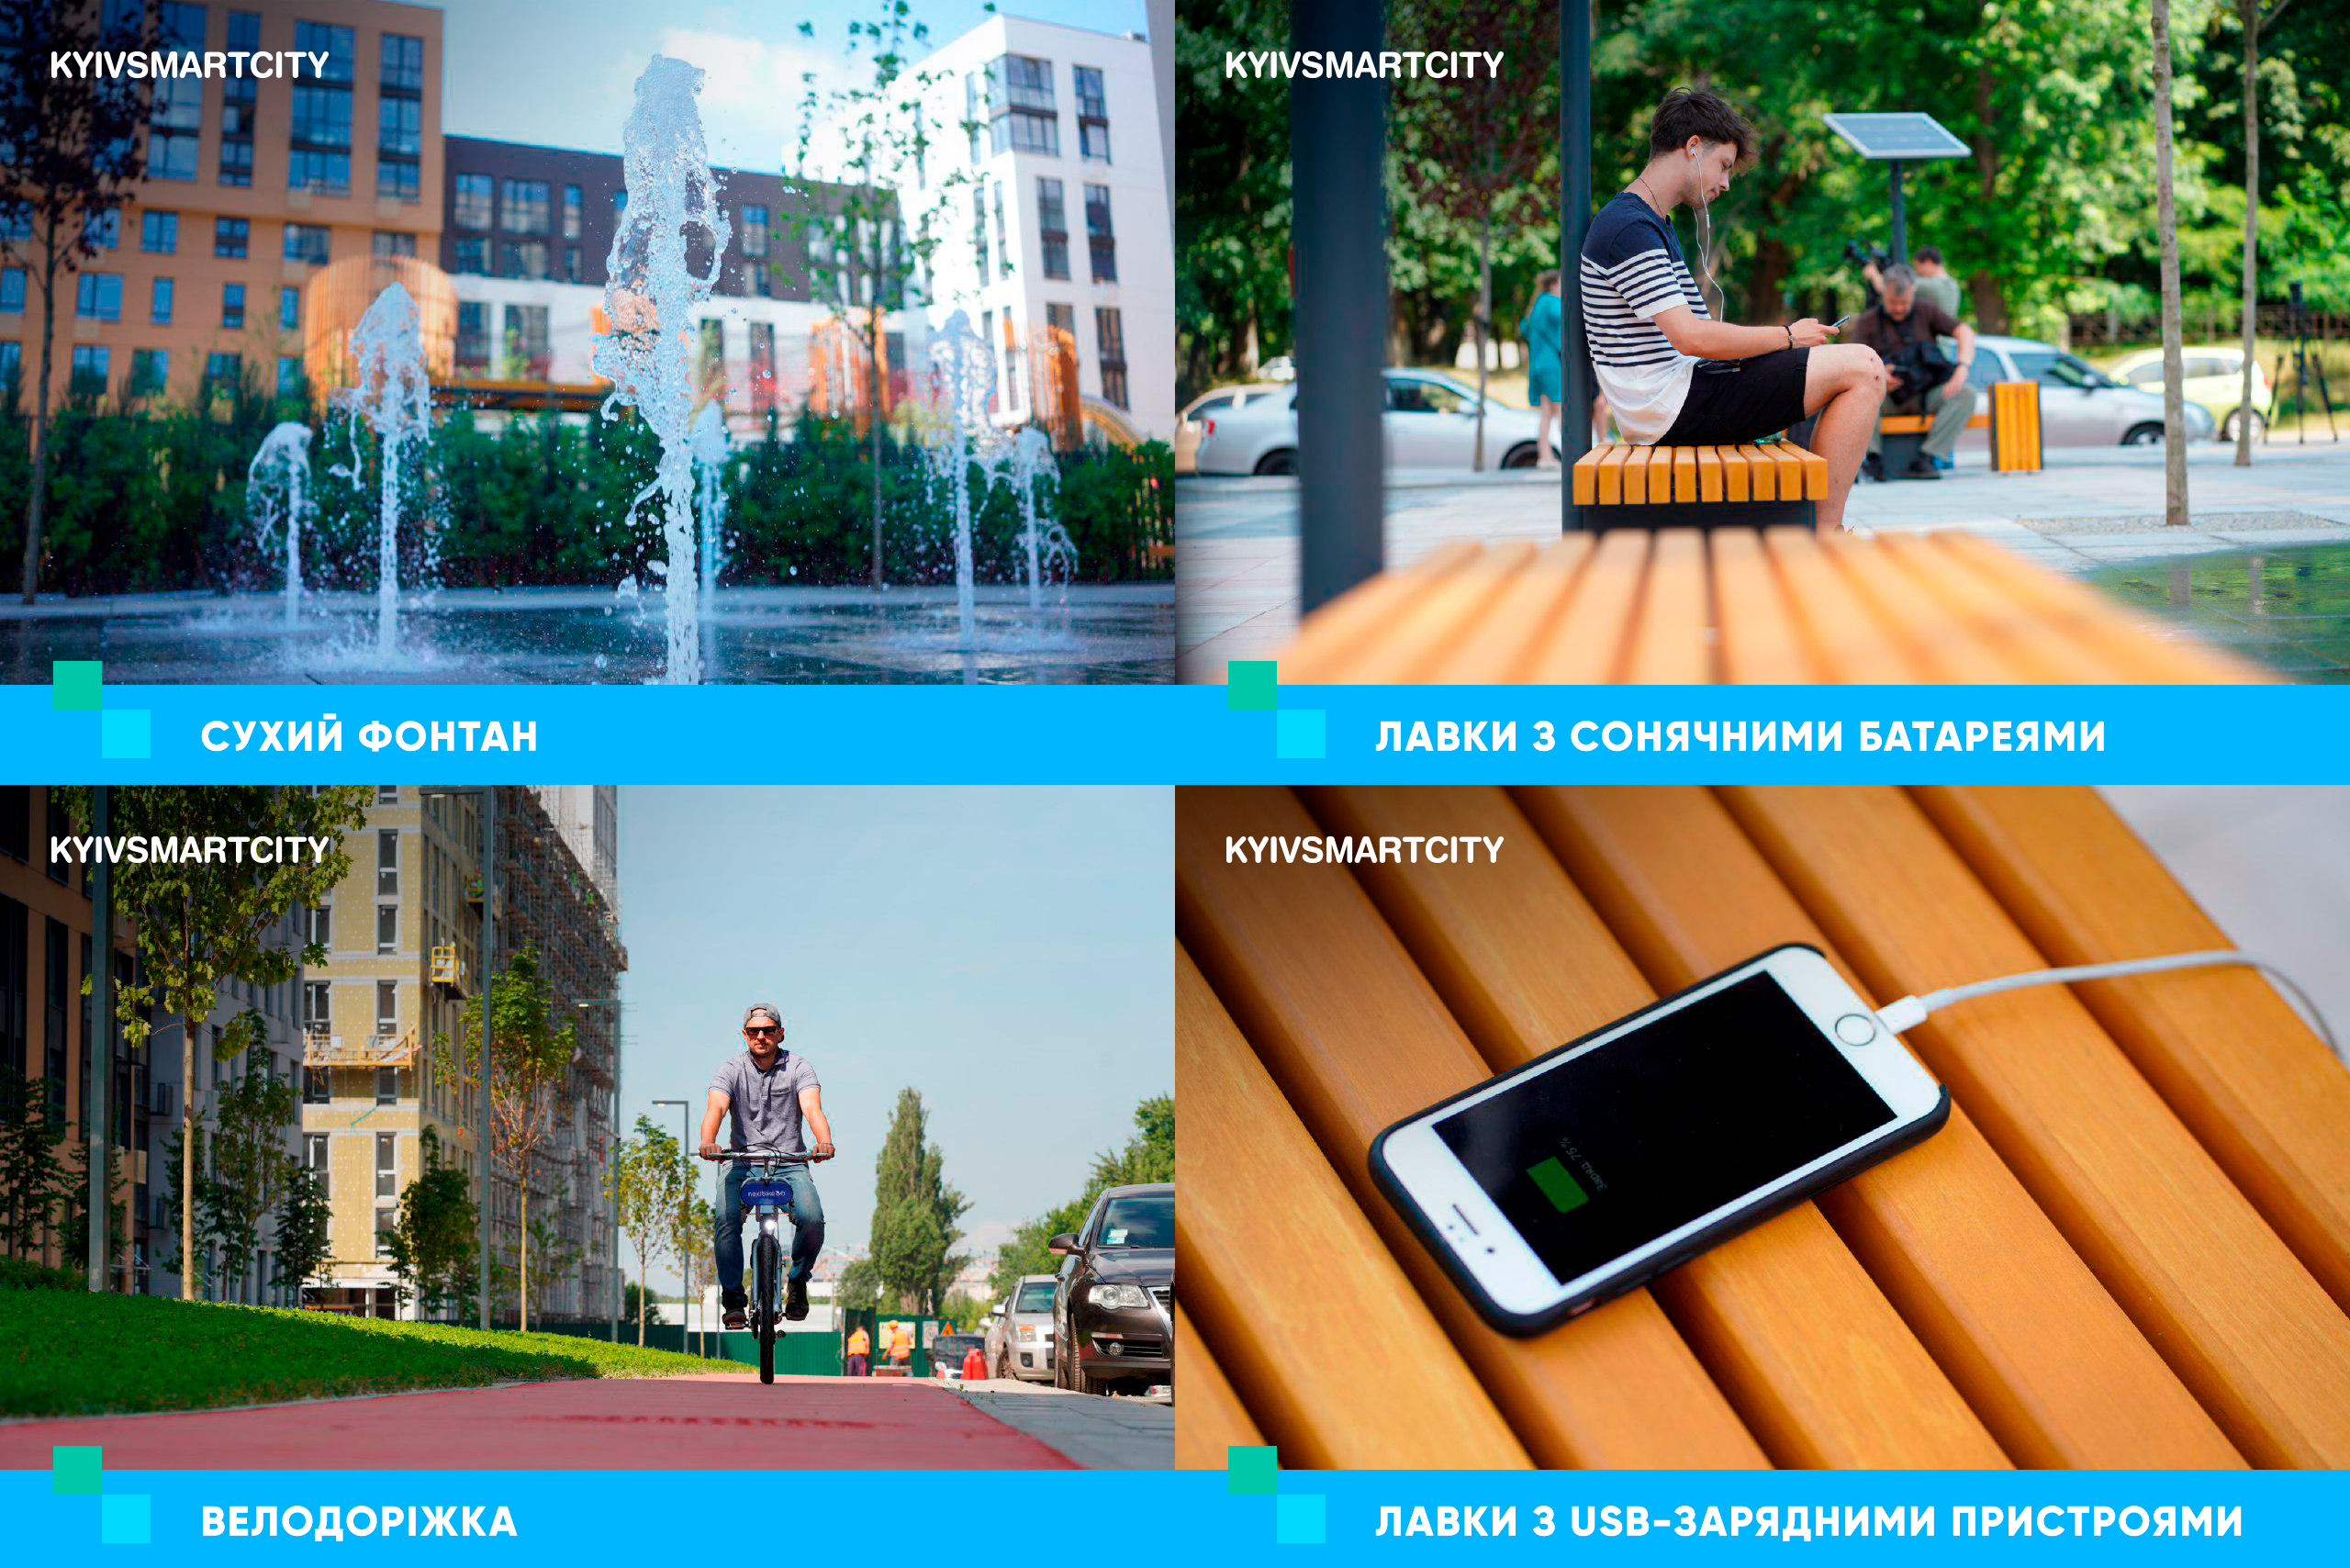 У Києві відкрили першу smart-вулицю — КМДА